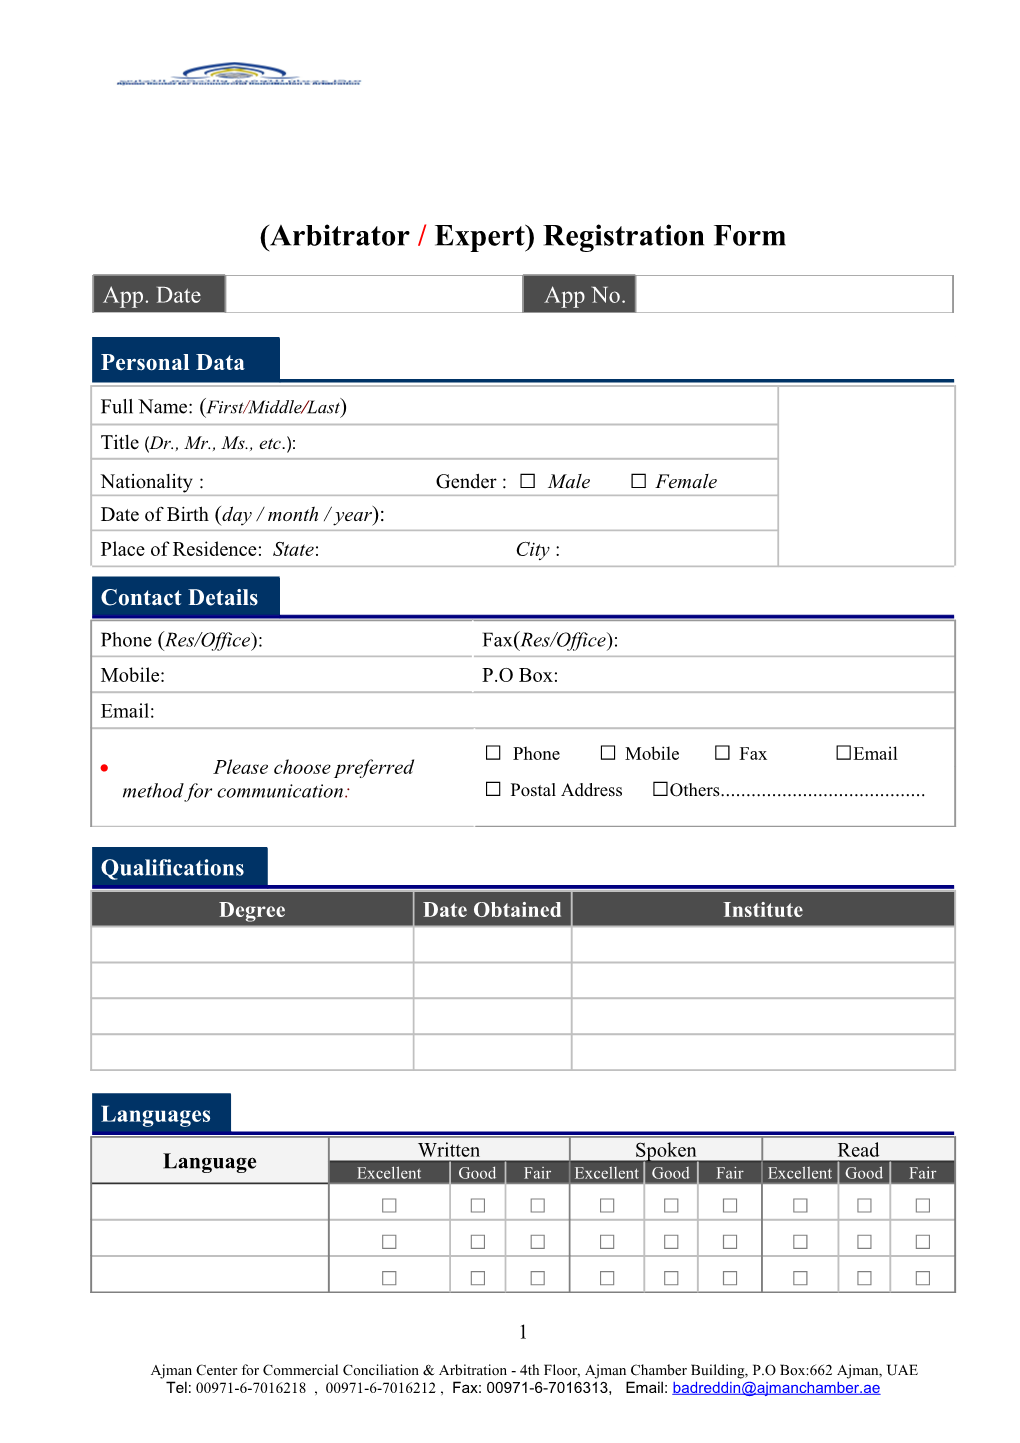 (Arbitrator/ Expert) Registration Form